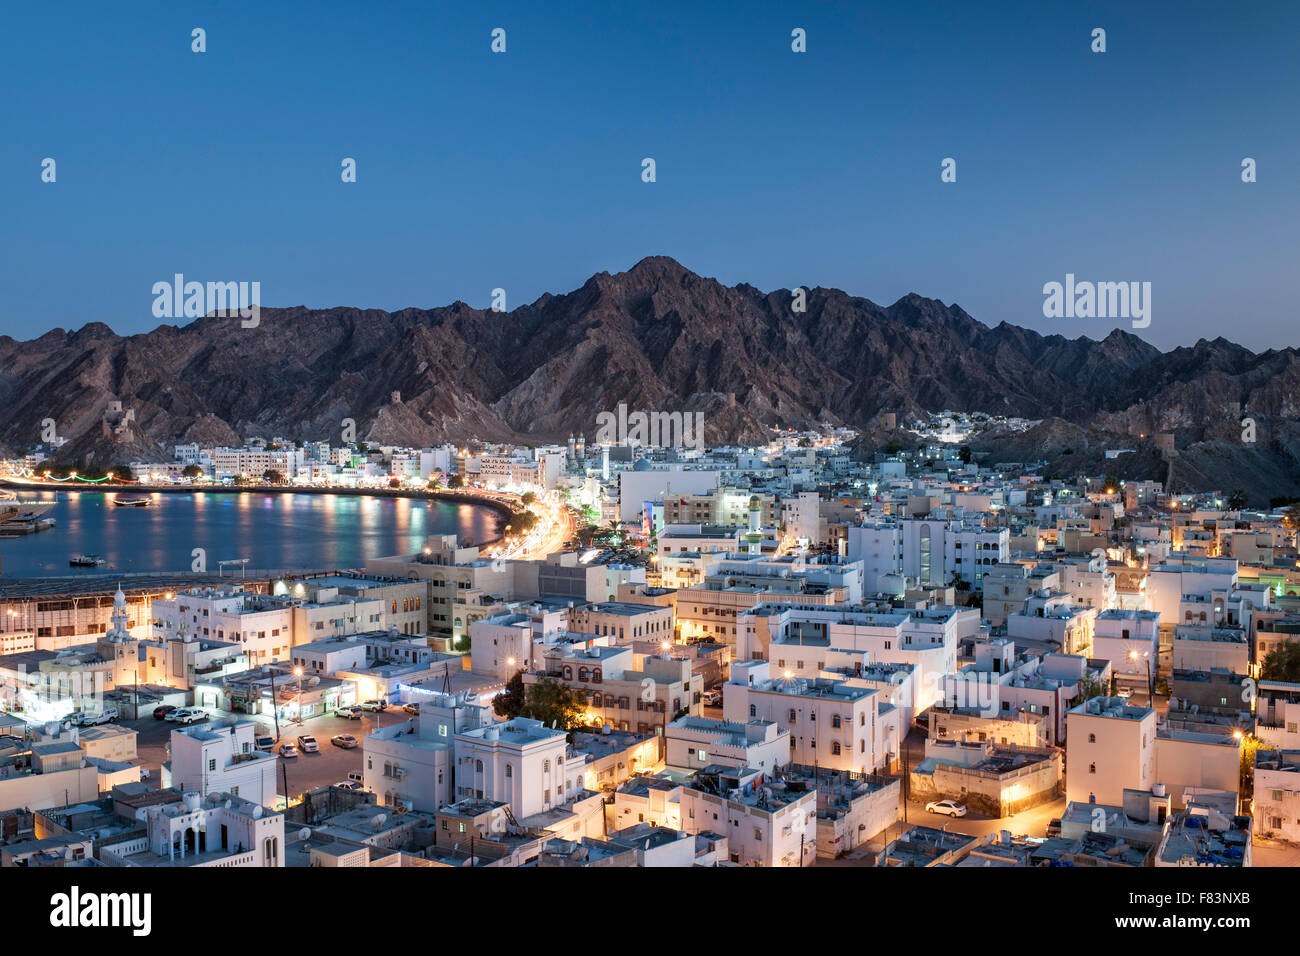 Abenddämmerung Blick auf den Stadtteil Mutrah und die umliegenden Berge in Muscat, der Hauptstadt des Sultanats Oman. Stockfoto